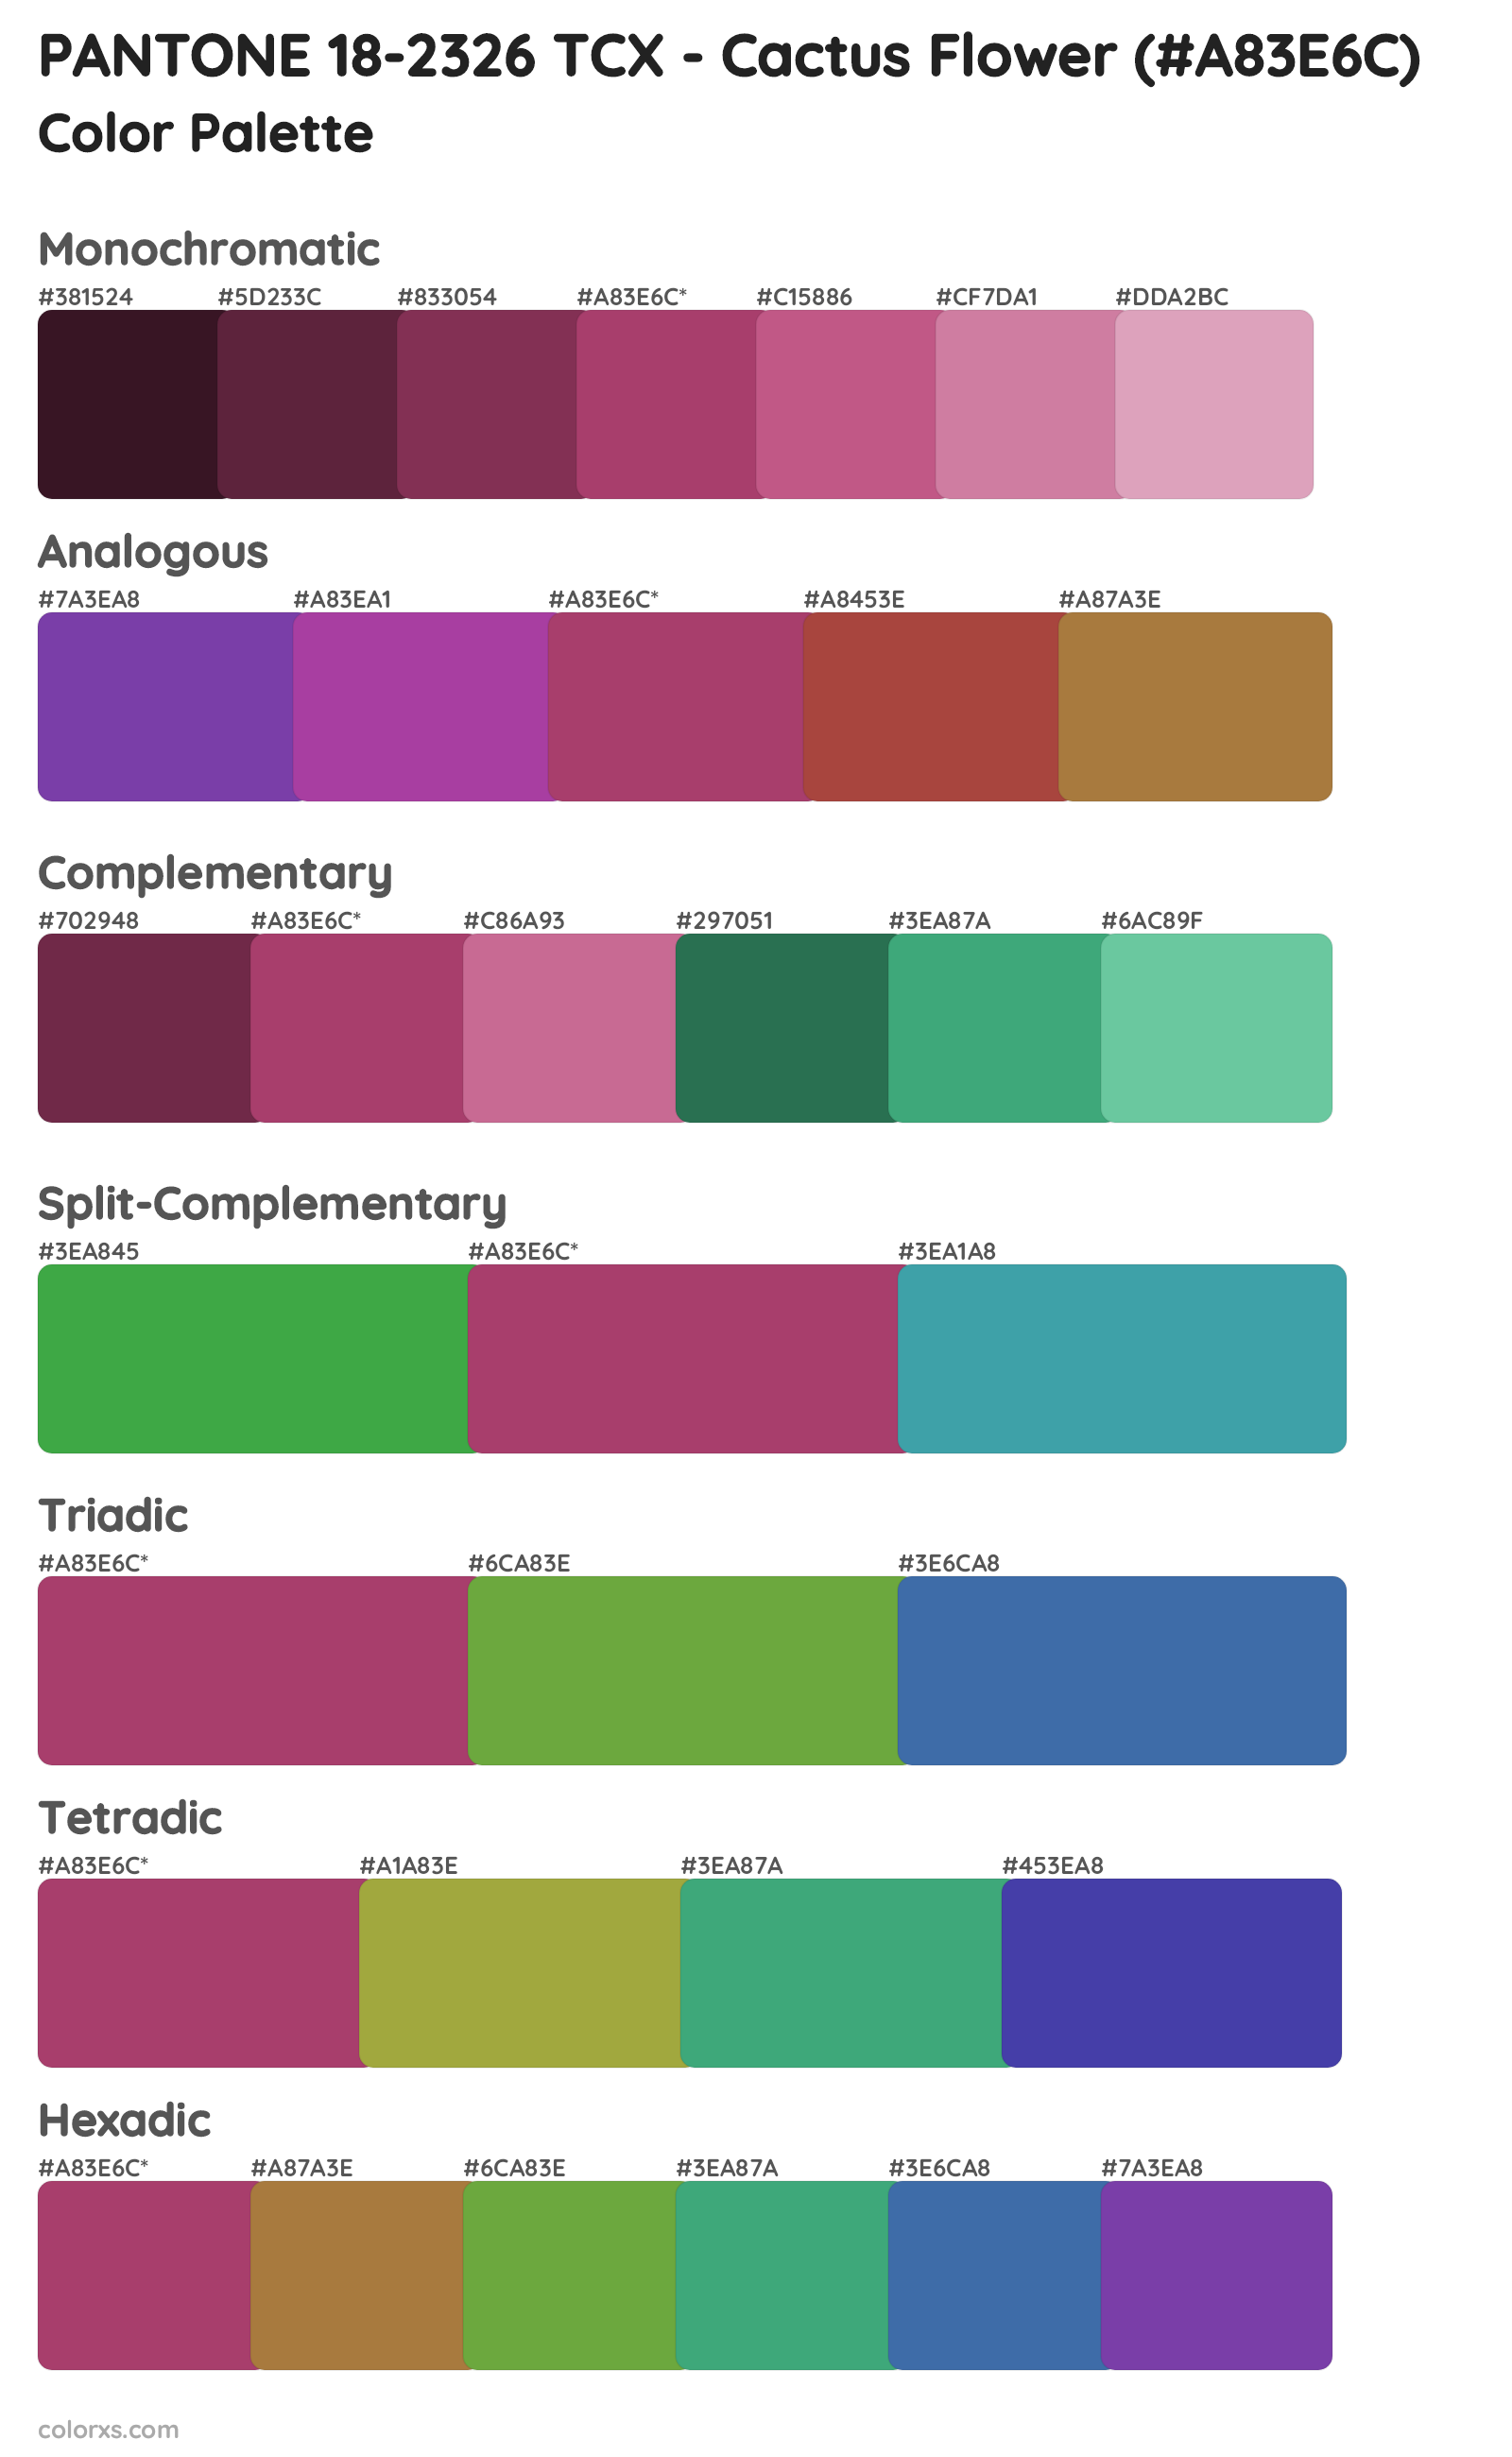 PANTONE 18-2326 TCX - Cactus Flower Color Scheme Palettes